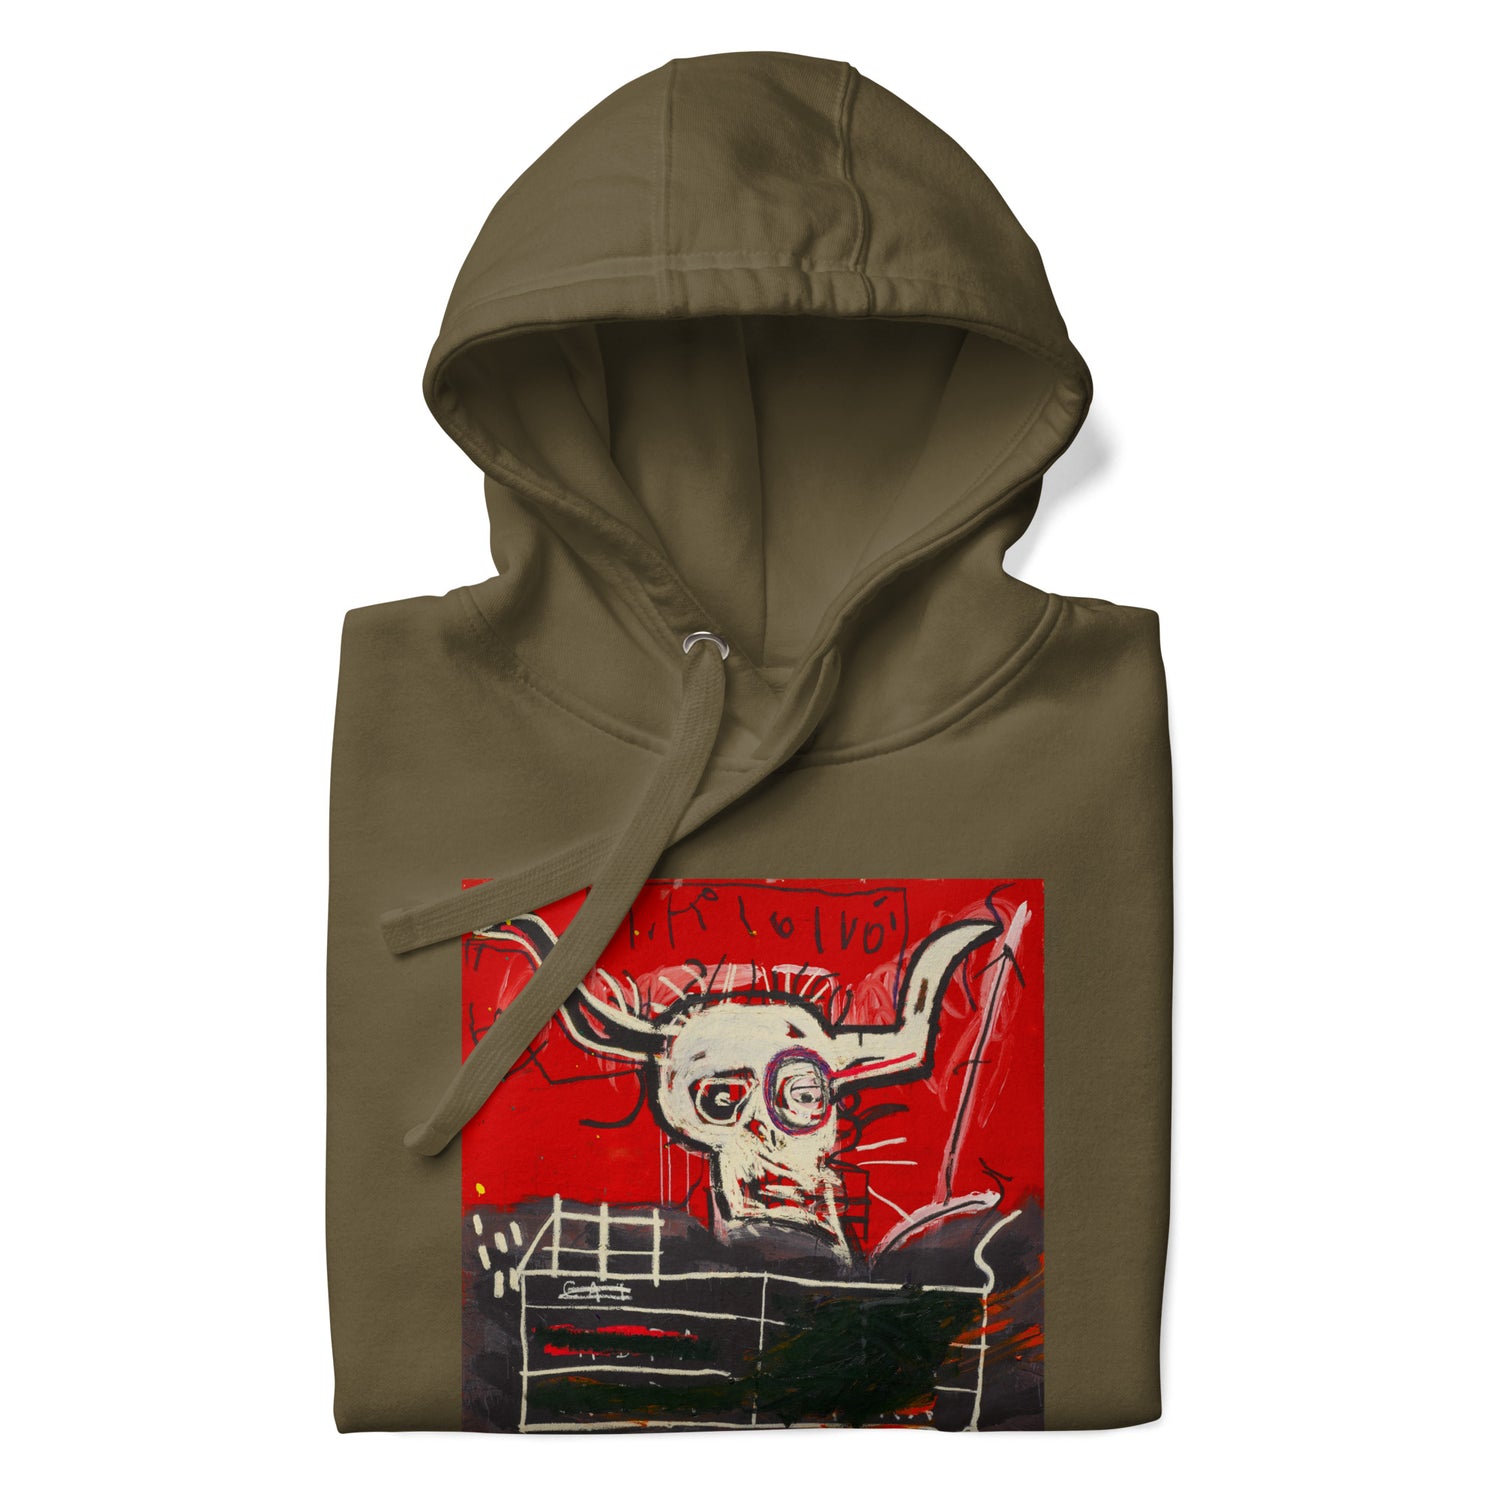 Jean-Michel Basquiat "Cabra" Artwork Printed Premium Streetwear Sweatshirt Hoodie Olive Green